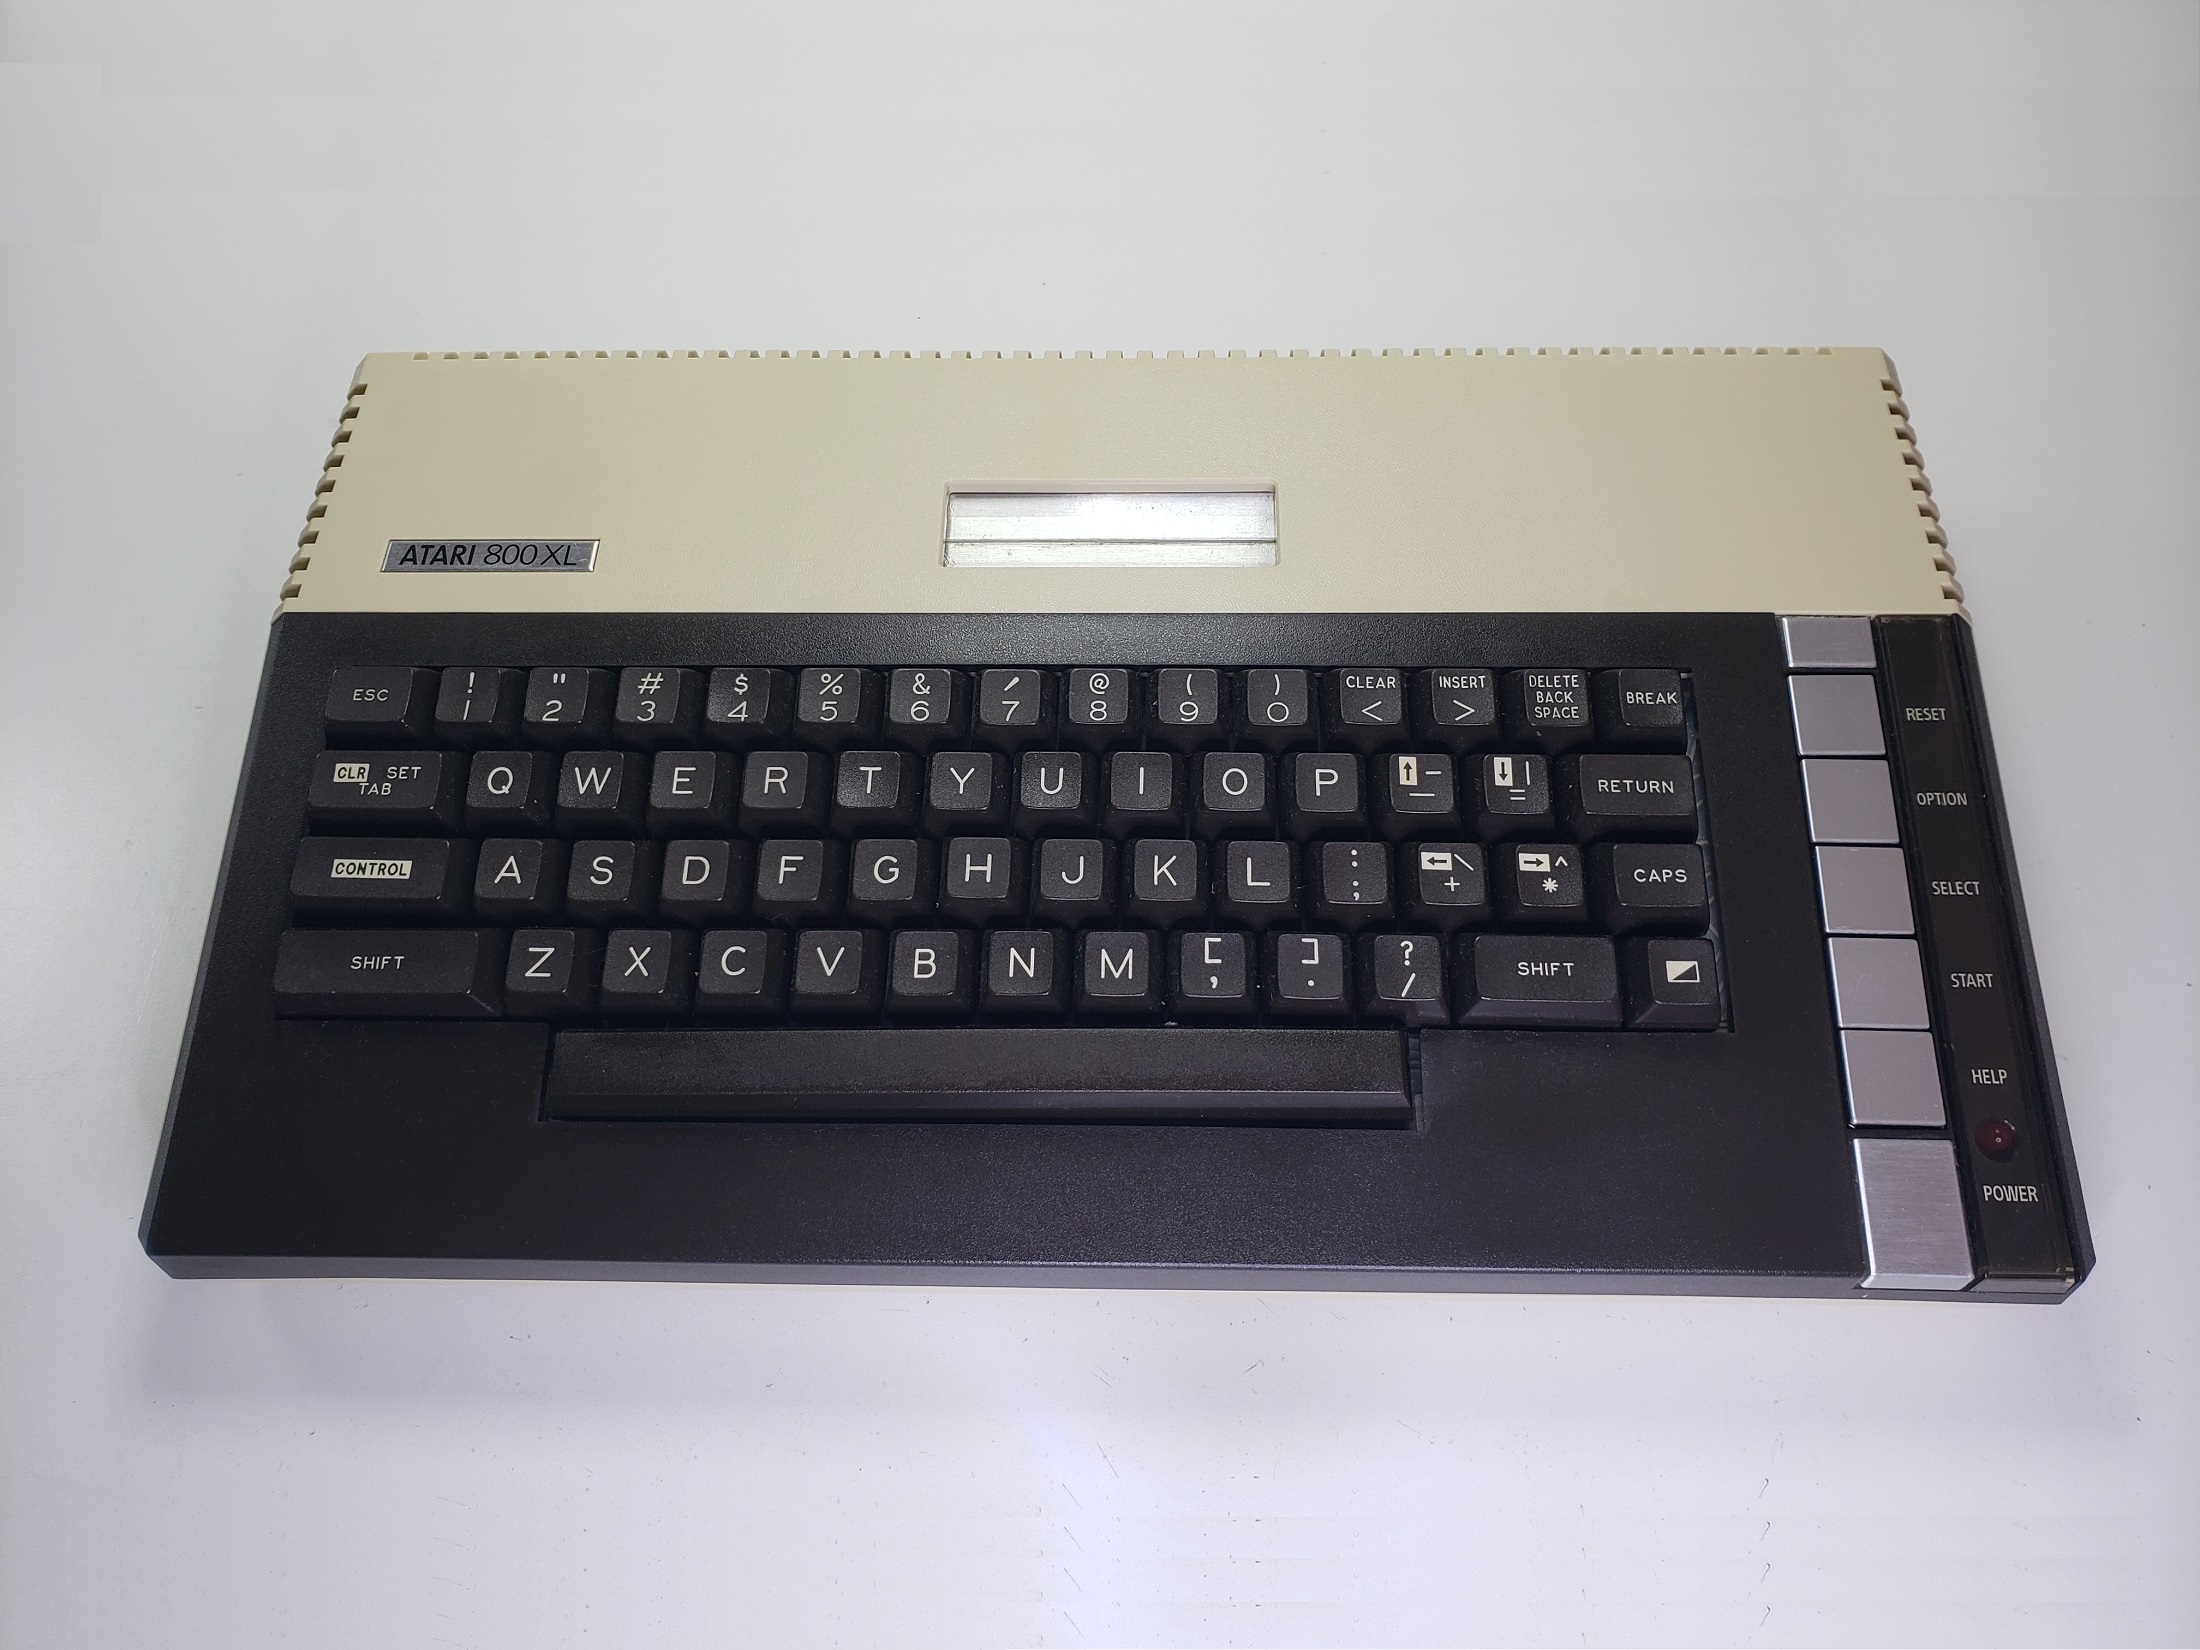 Atari 800XL: Consola frente - AT84237805